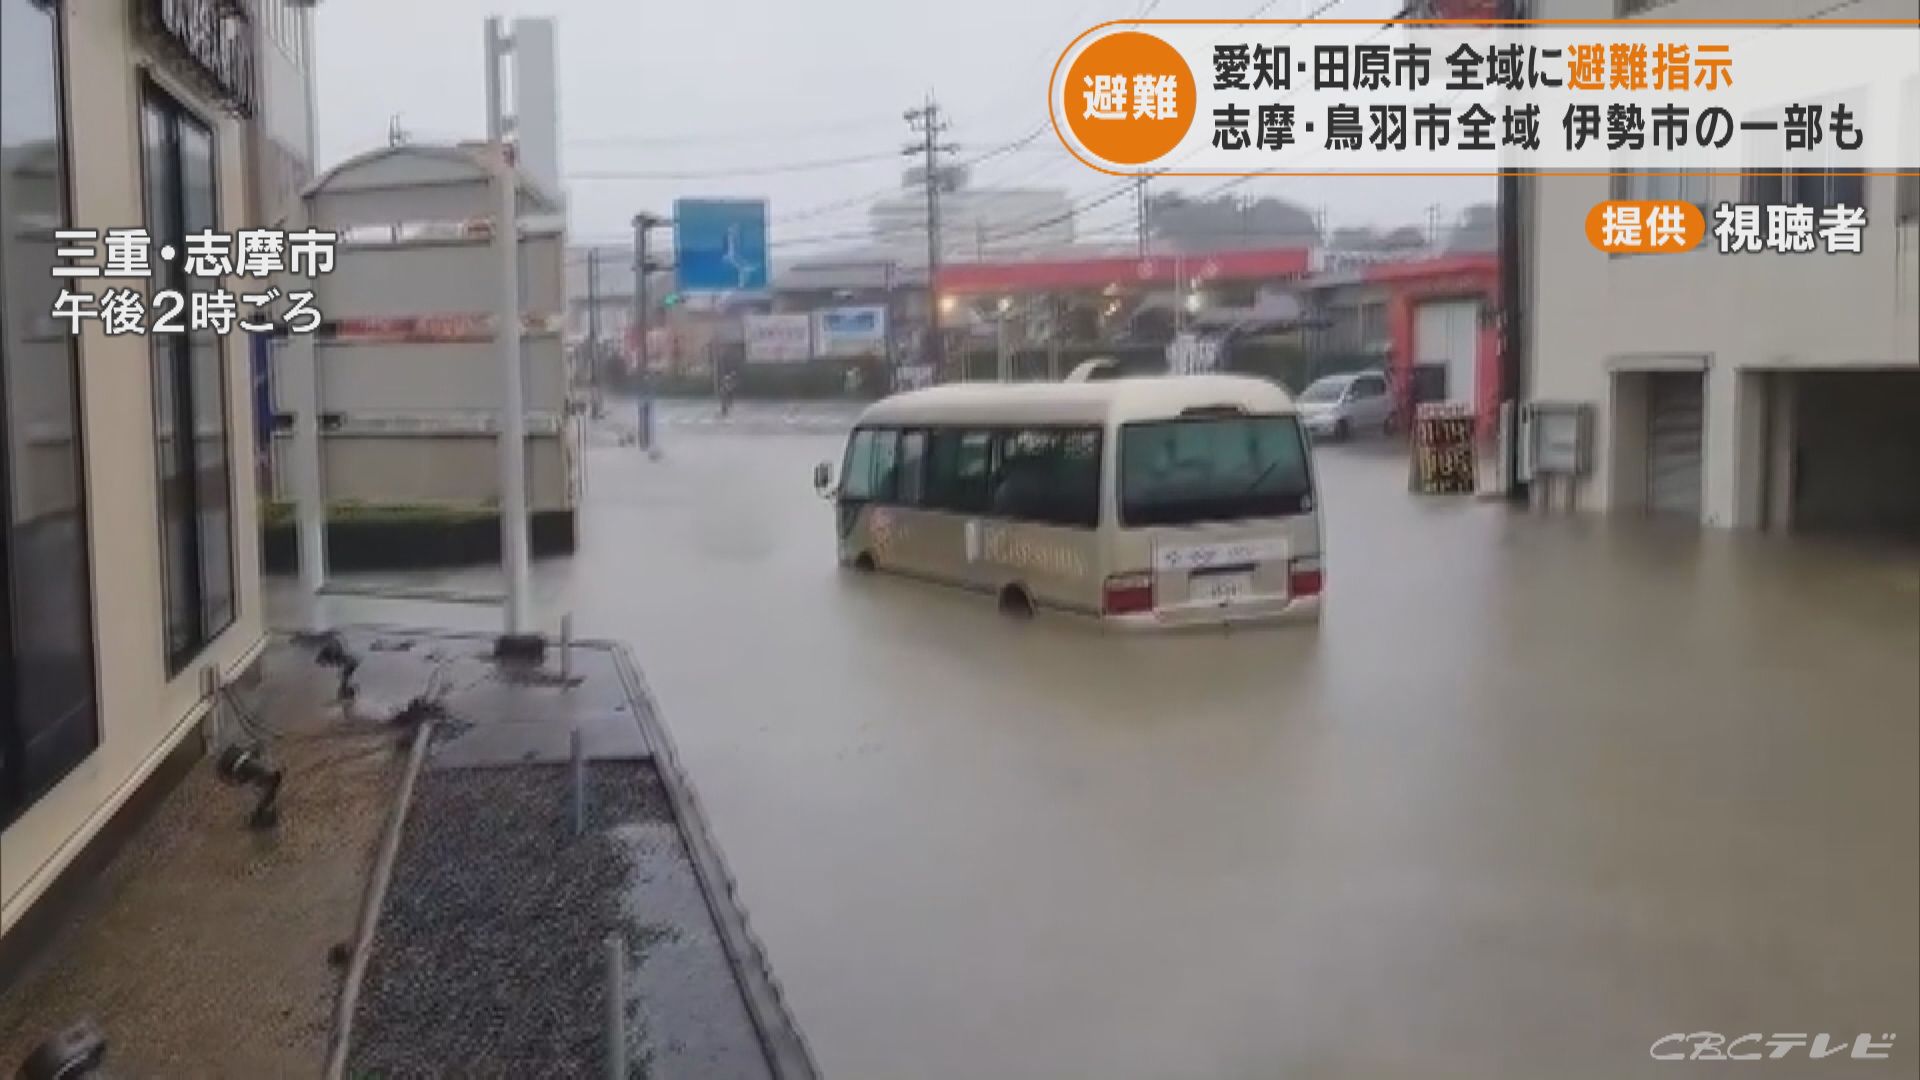 雨水が滝のように階段を流れ 冠水する道路でバスが立ち往生 台風15号 三重や愛知の映像 東海地方のニュース Cbc News Cbc Web